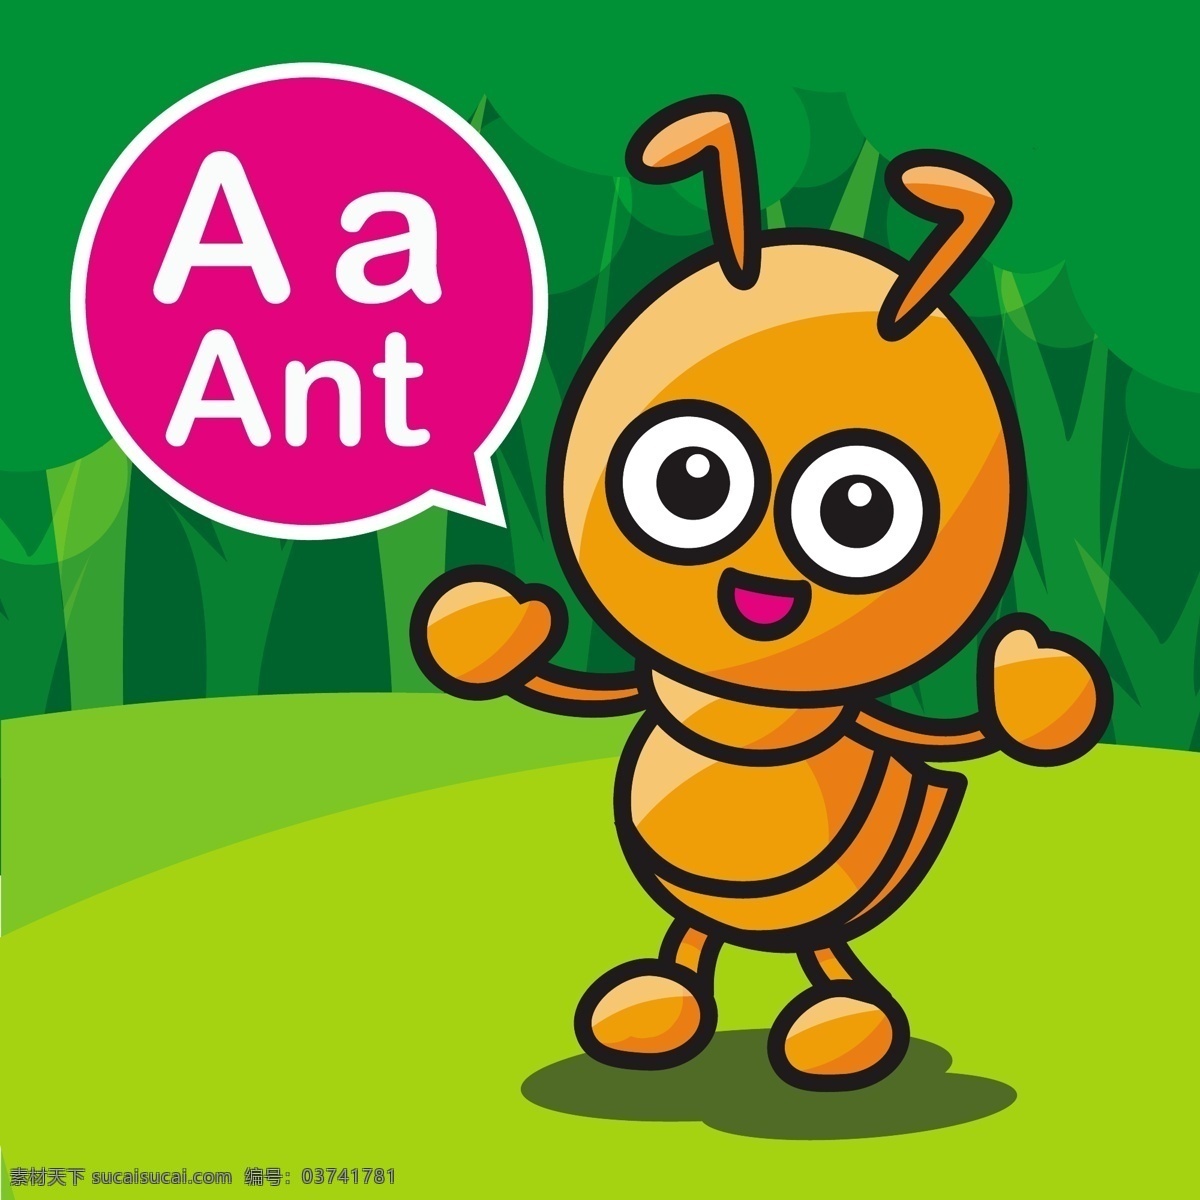 蚂蚁 卡通 小 动物 矢量 背景 小蚂蚁 英语 幼儿园 教学 学习 卡牌 手绘 形象